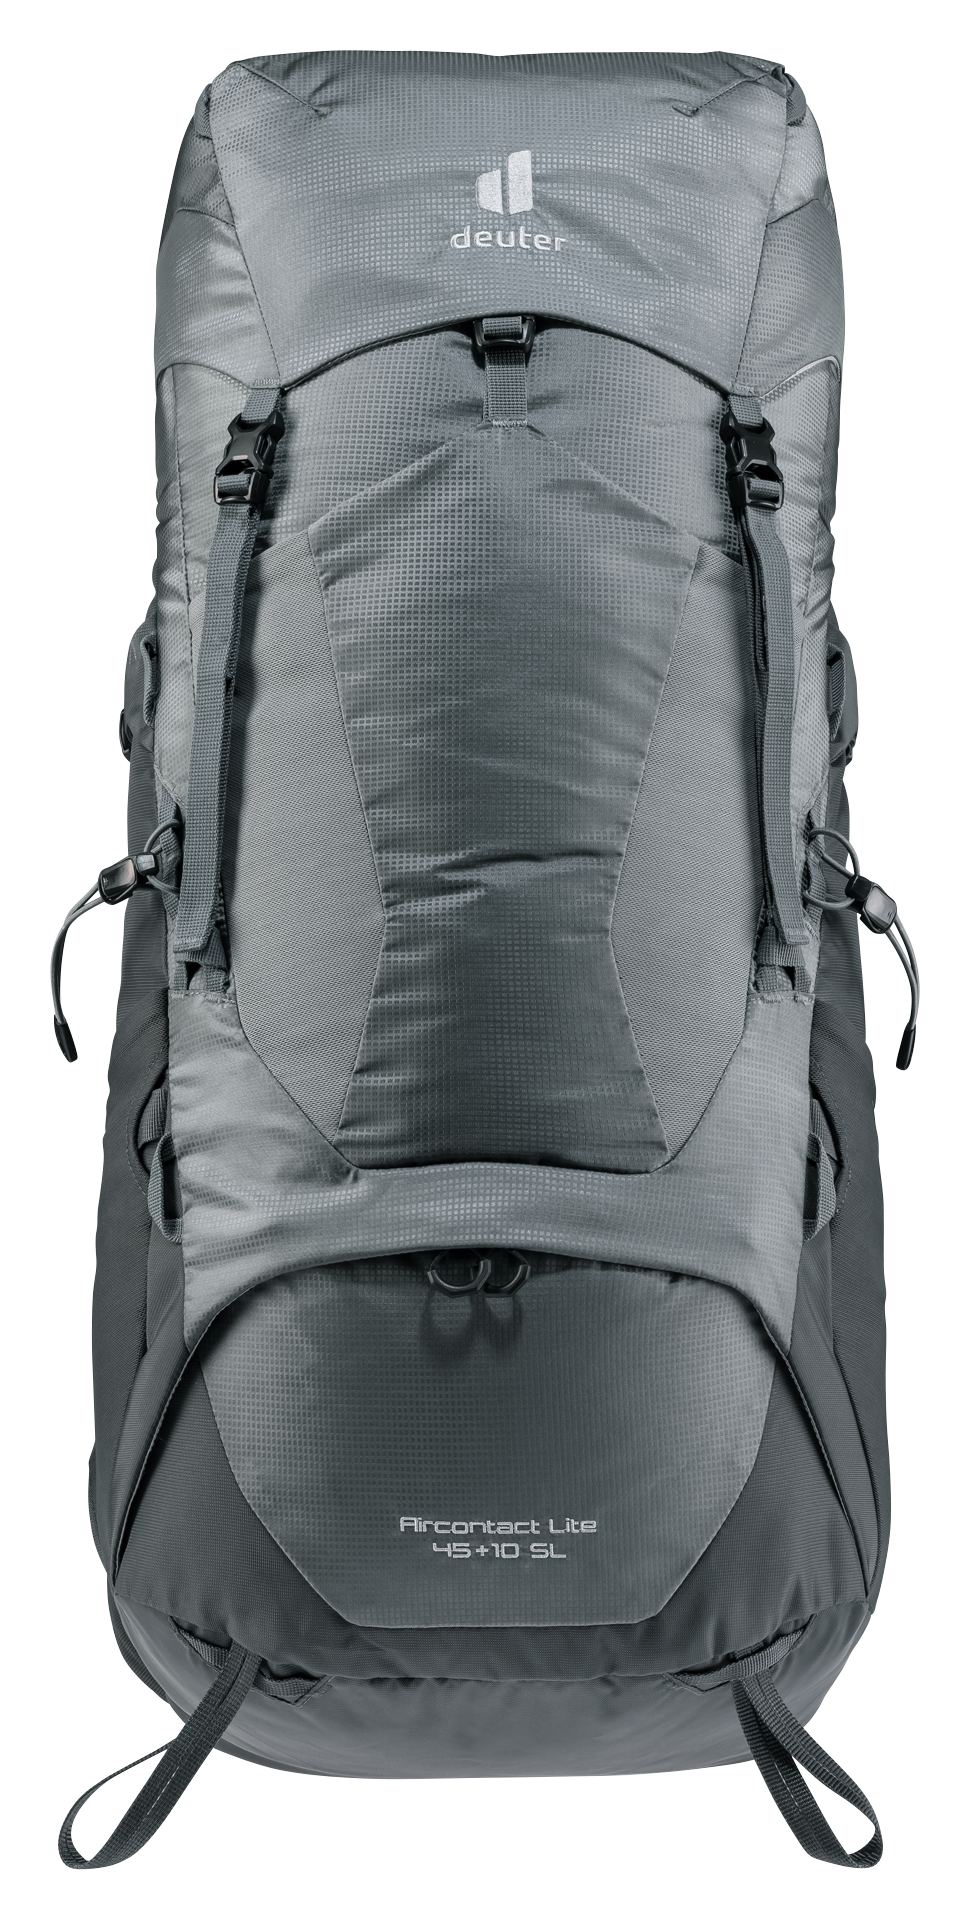 Aircontact Lite 45+10 SL Backpack: Weekender